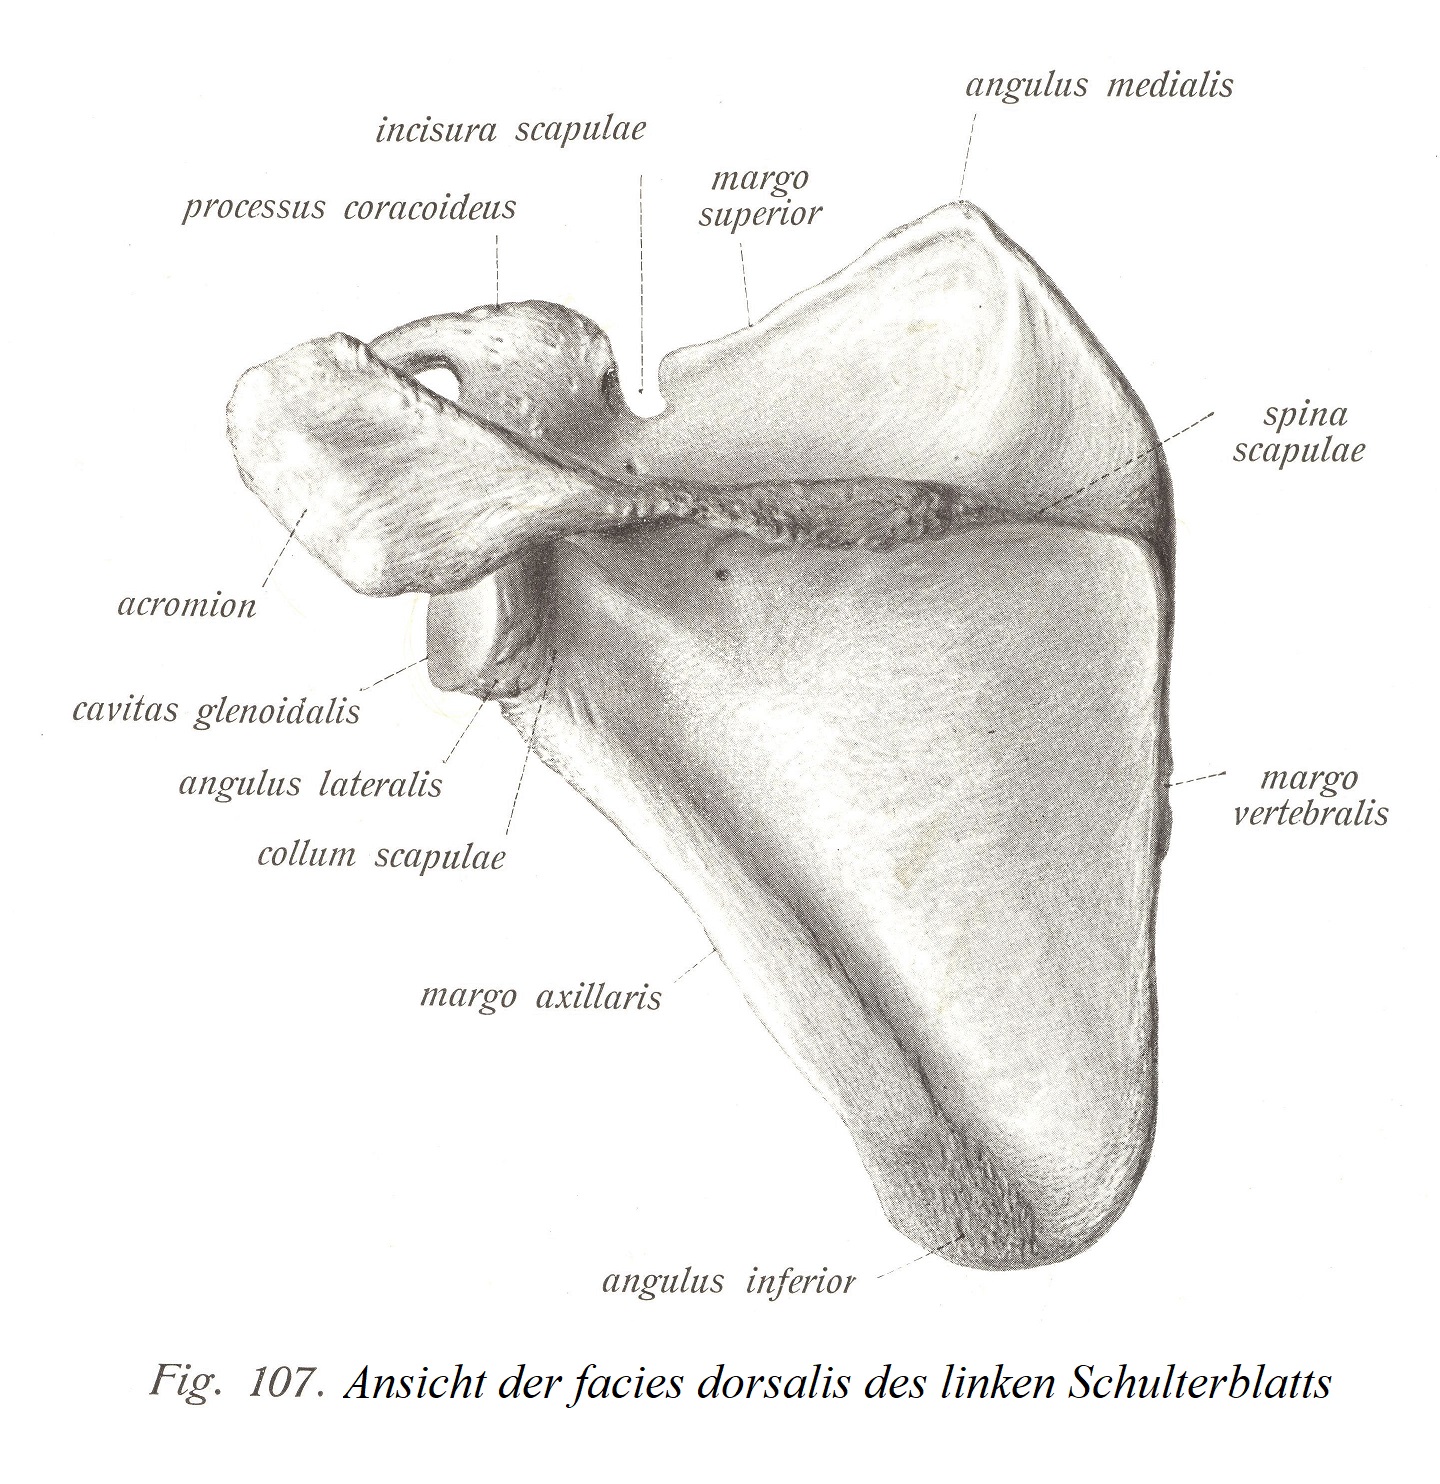 Вид facies dorsalis левой лопатки